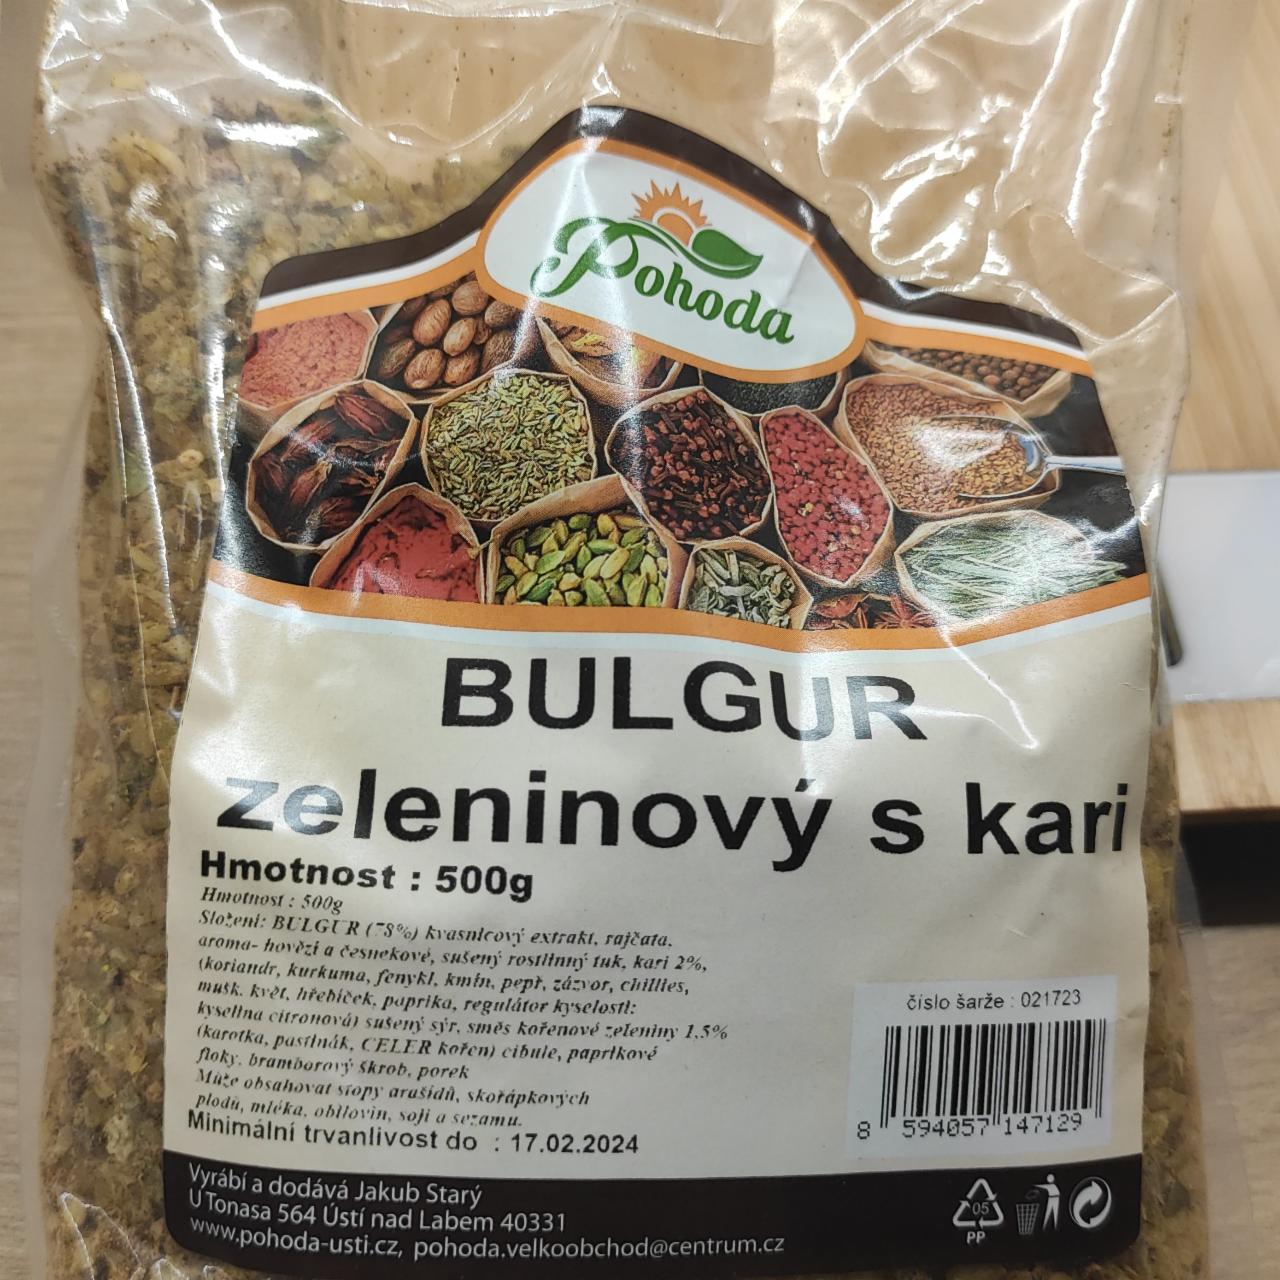 Fotografie - Bulgur zeleninový s kari Pohoda